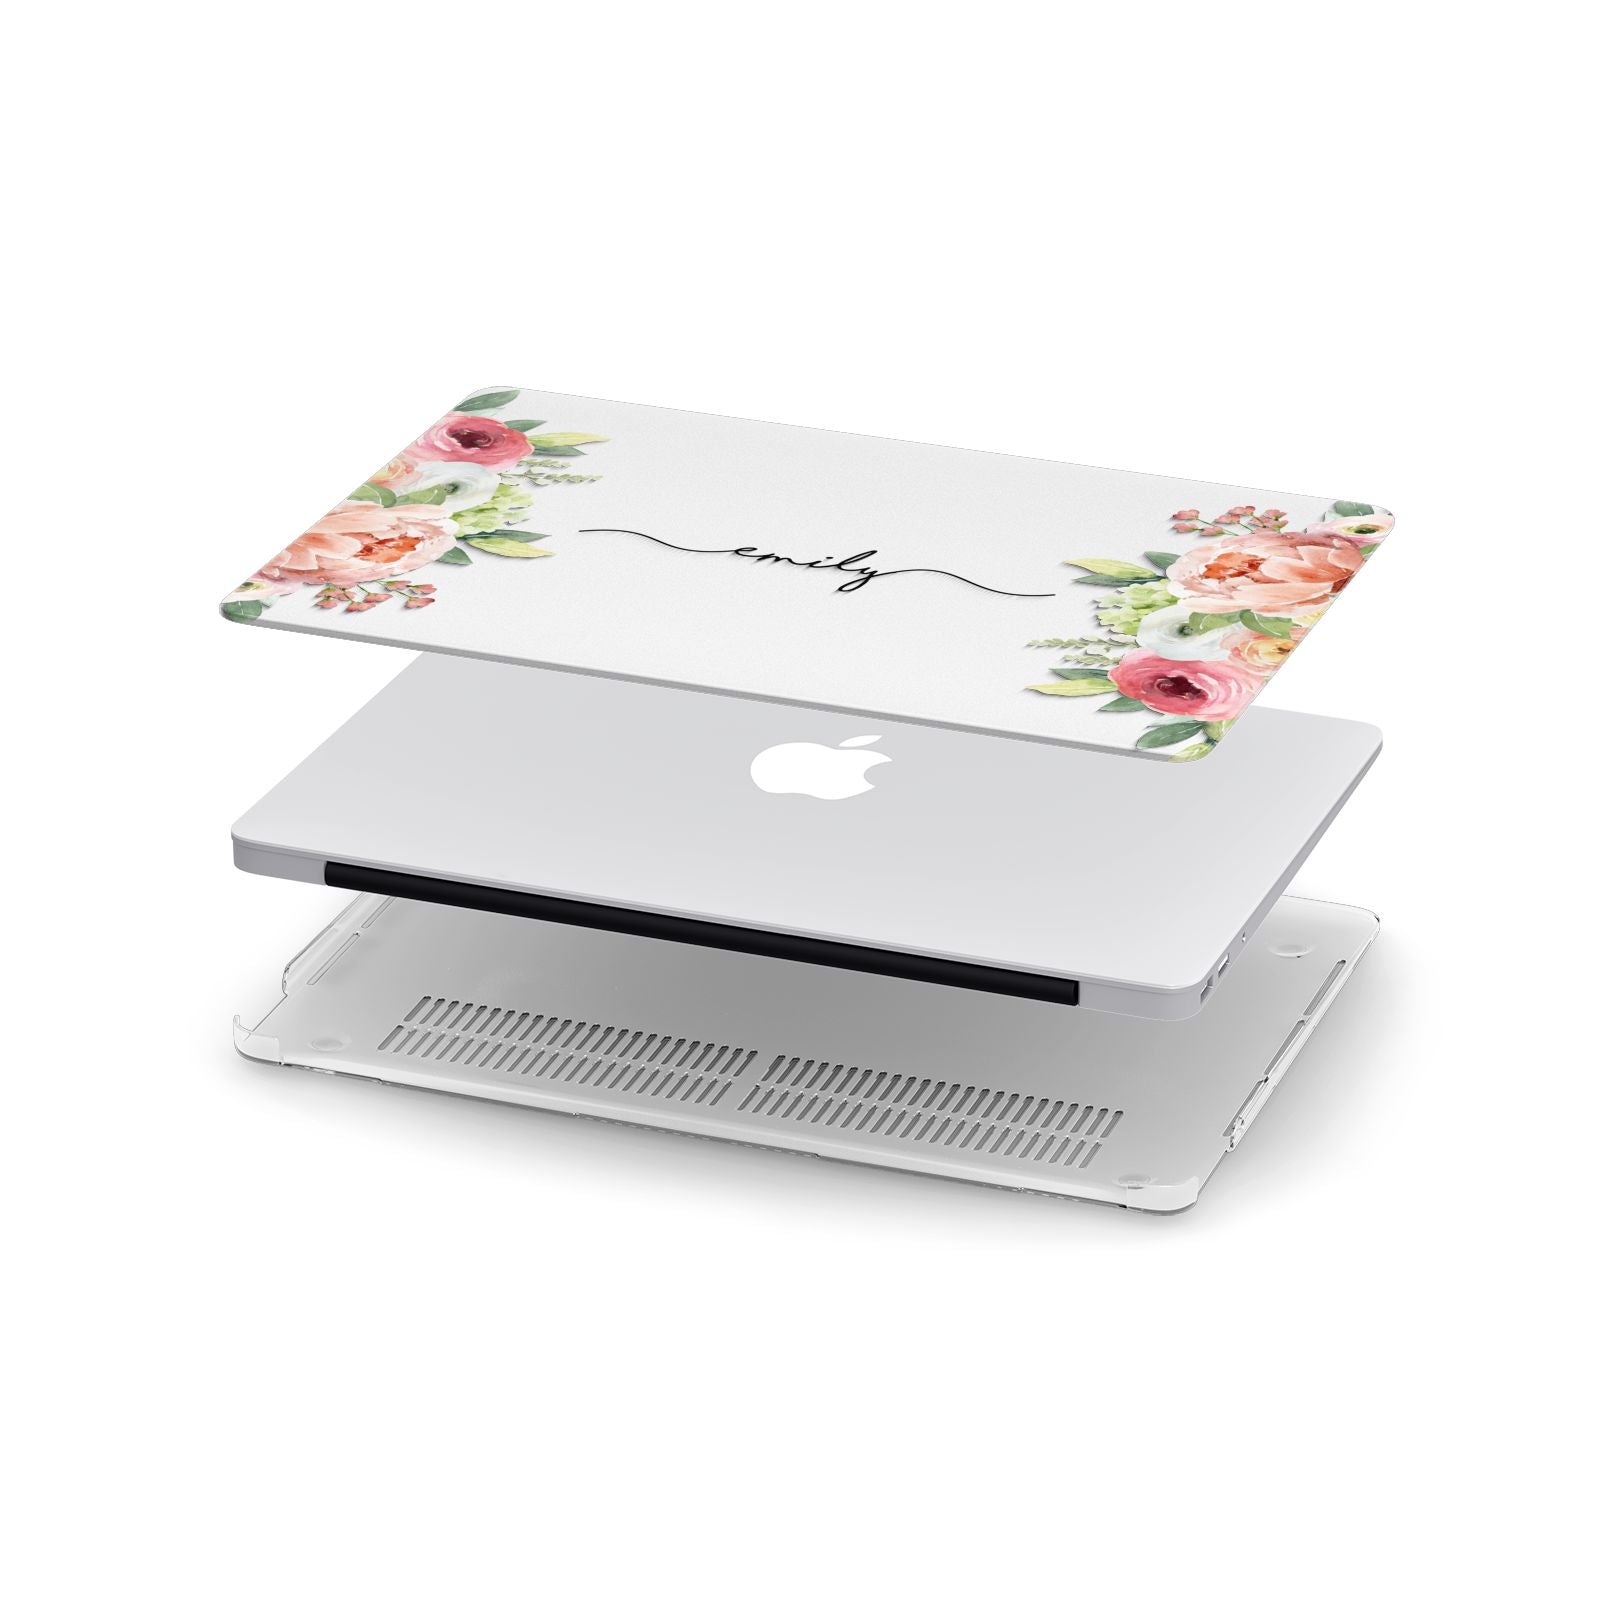 Personalised Flowers Apple MacBook Case in Detail